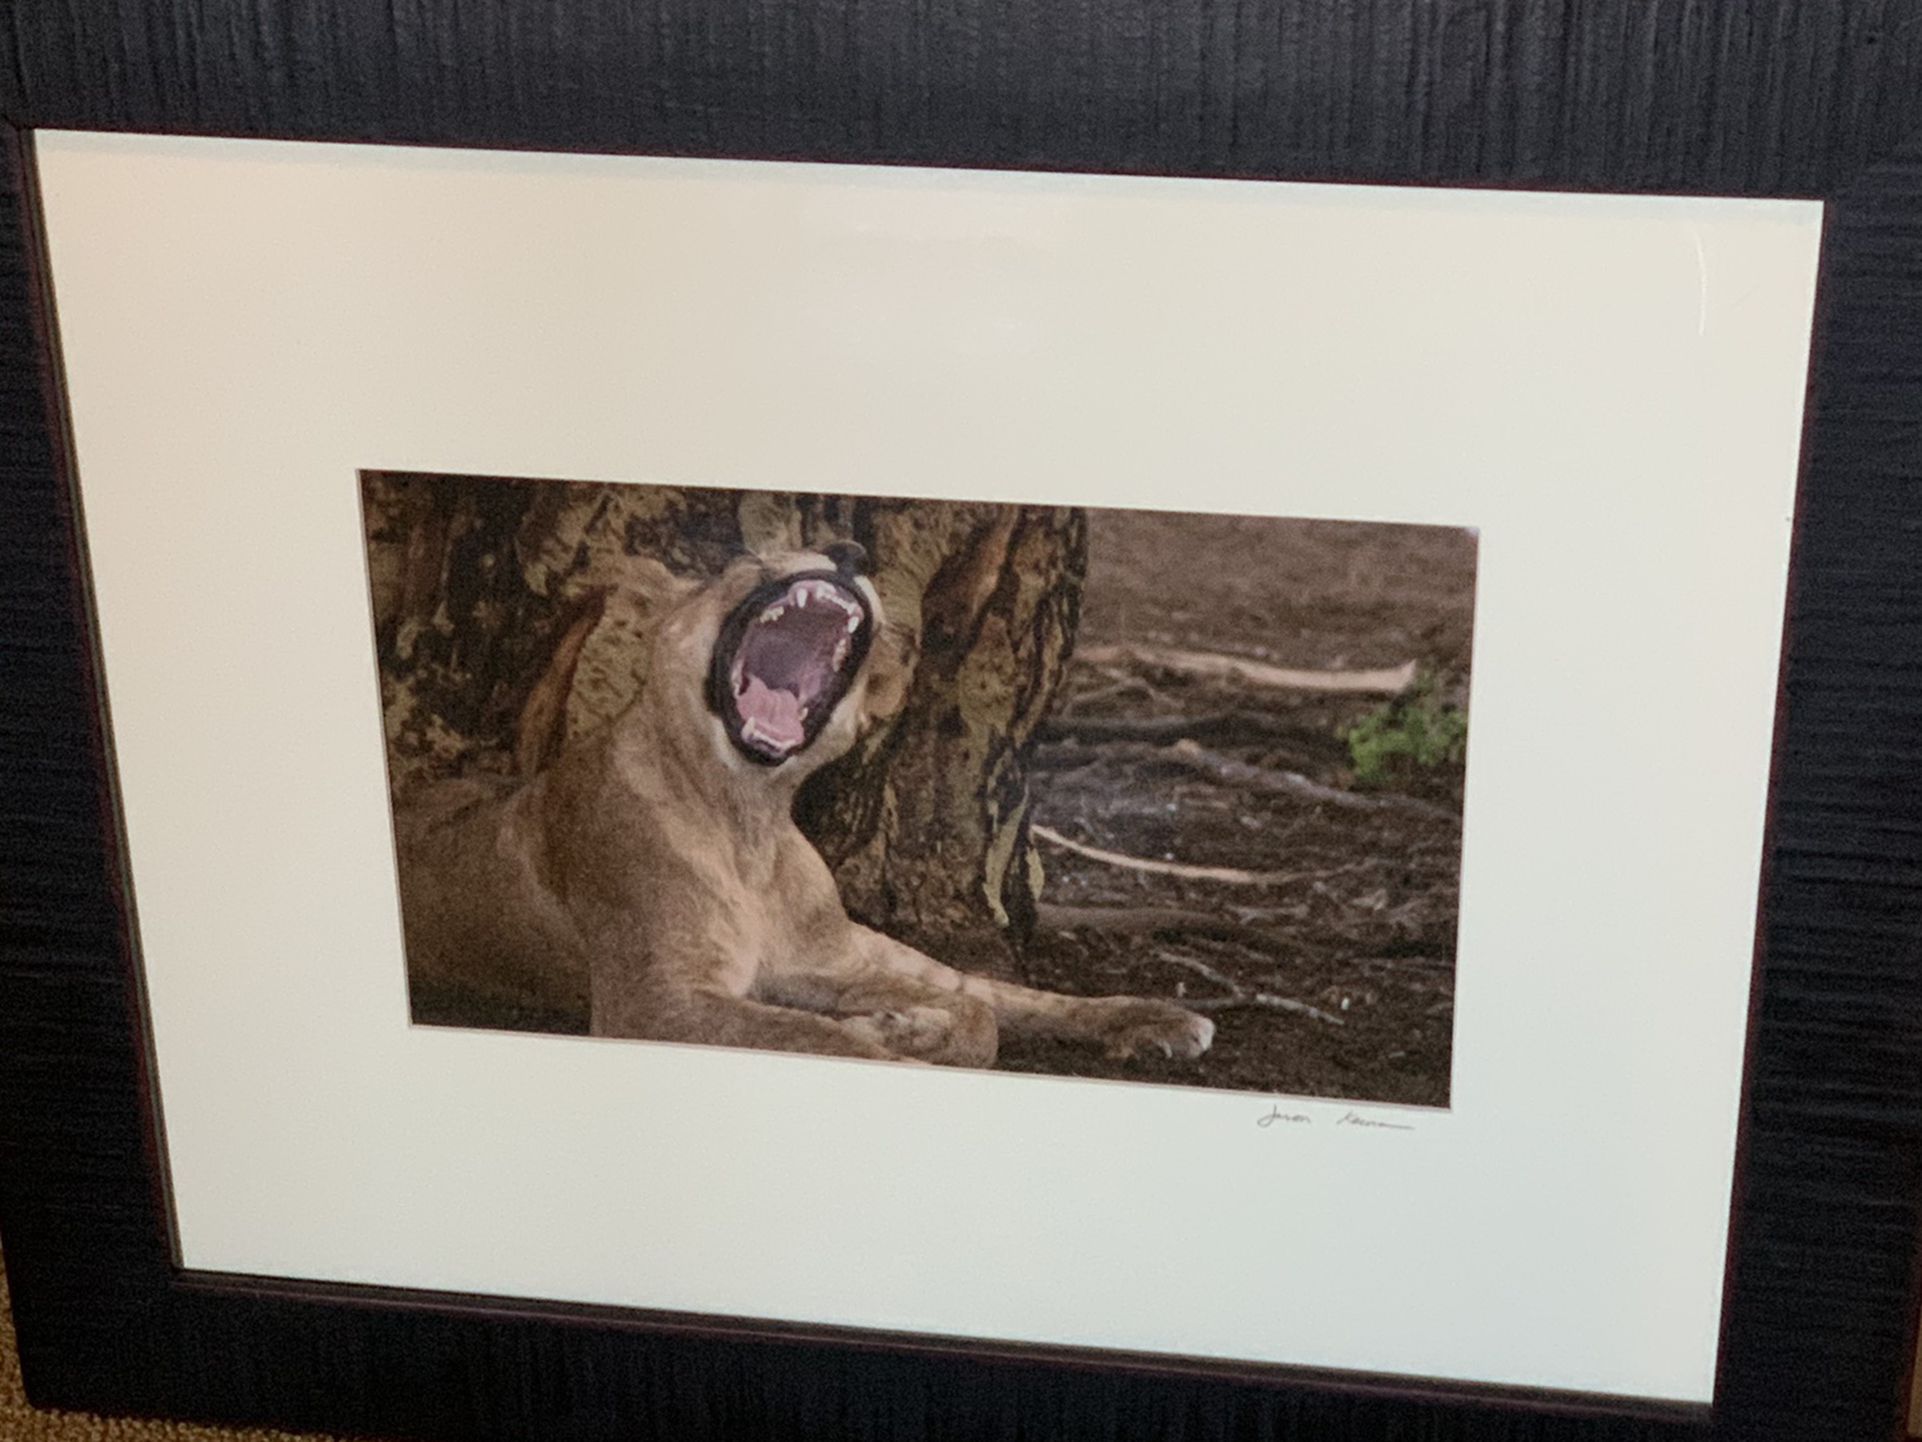 Large Framed Photo Of Lion Yawning/Roaring